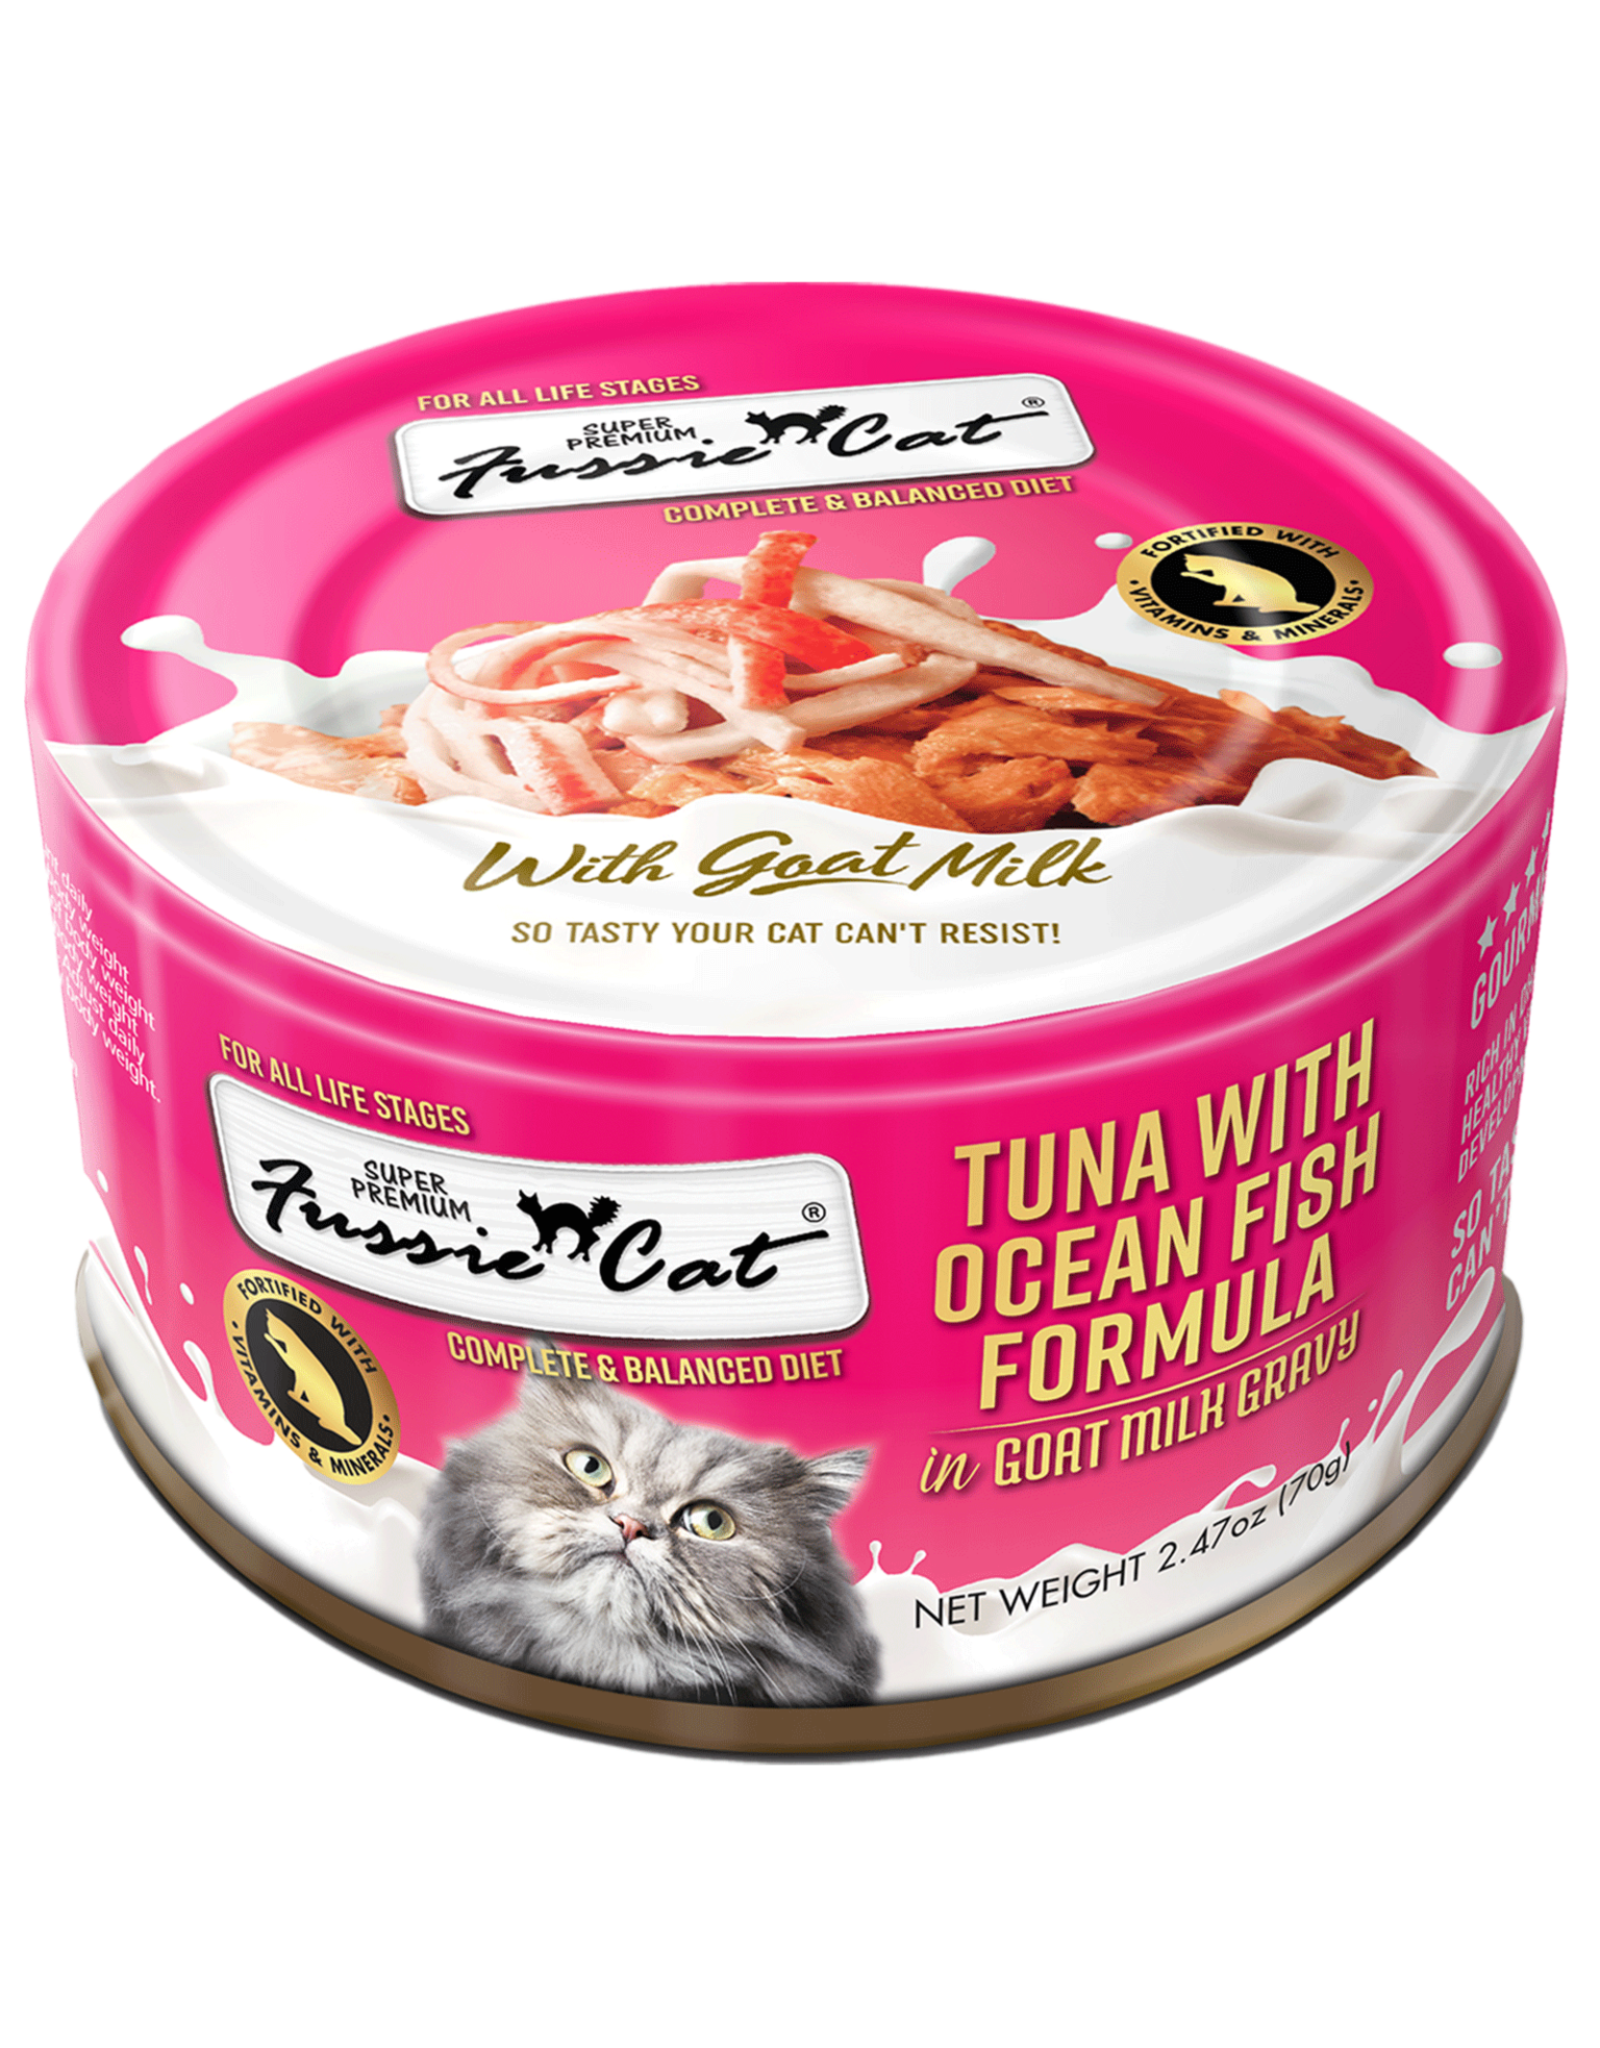 FUSSIE CAT FUSSIE CAT TUNA OCEANFISH GOAT MILK 2.47OZ